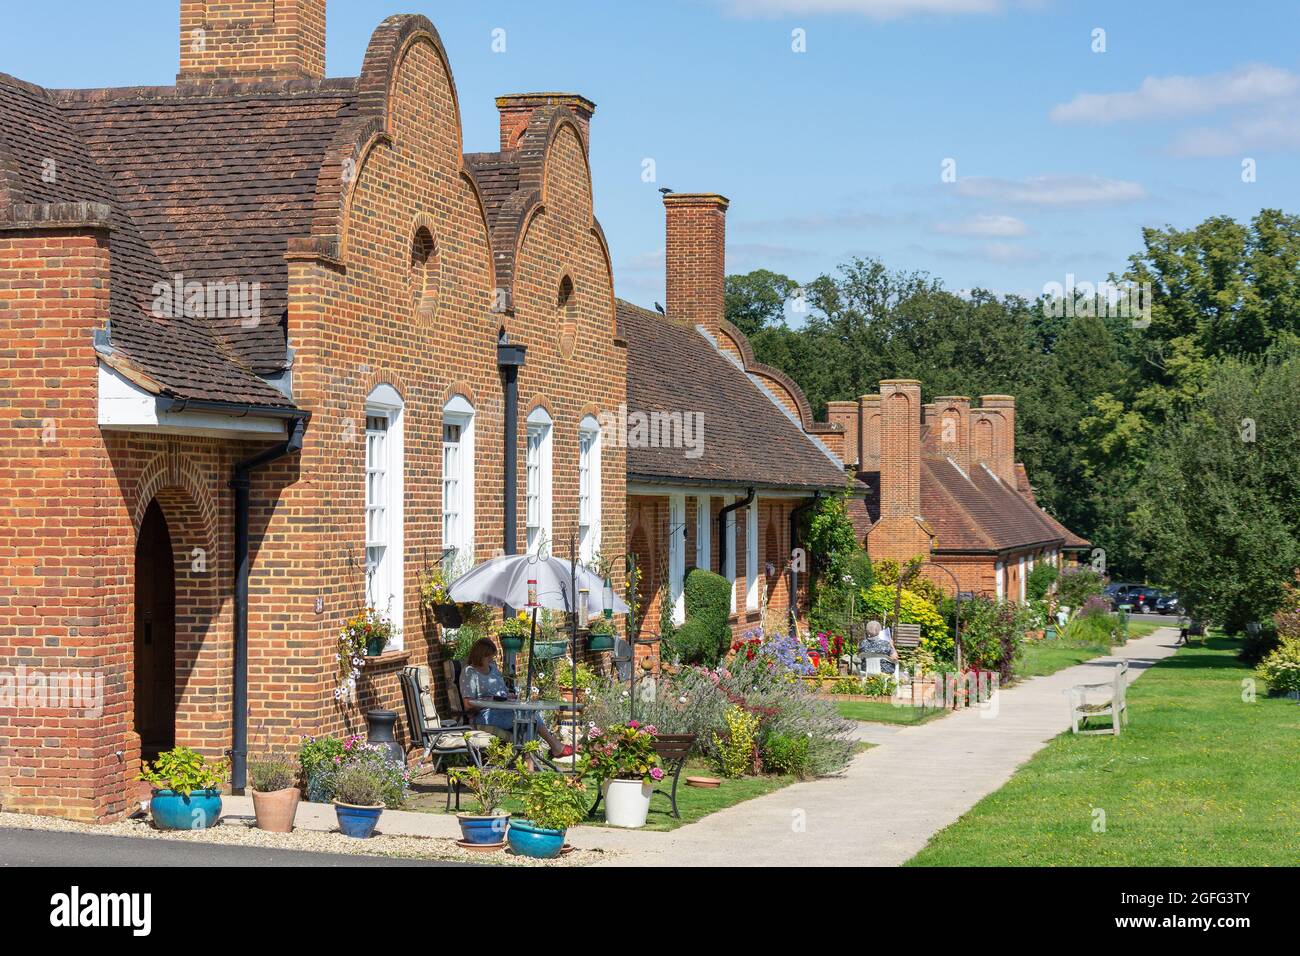 Propriétés avec jardins, Whiteley Village, Hersham, Surrey, Angleterre, Royaume-Uni Banque D'Images